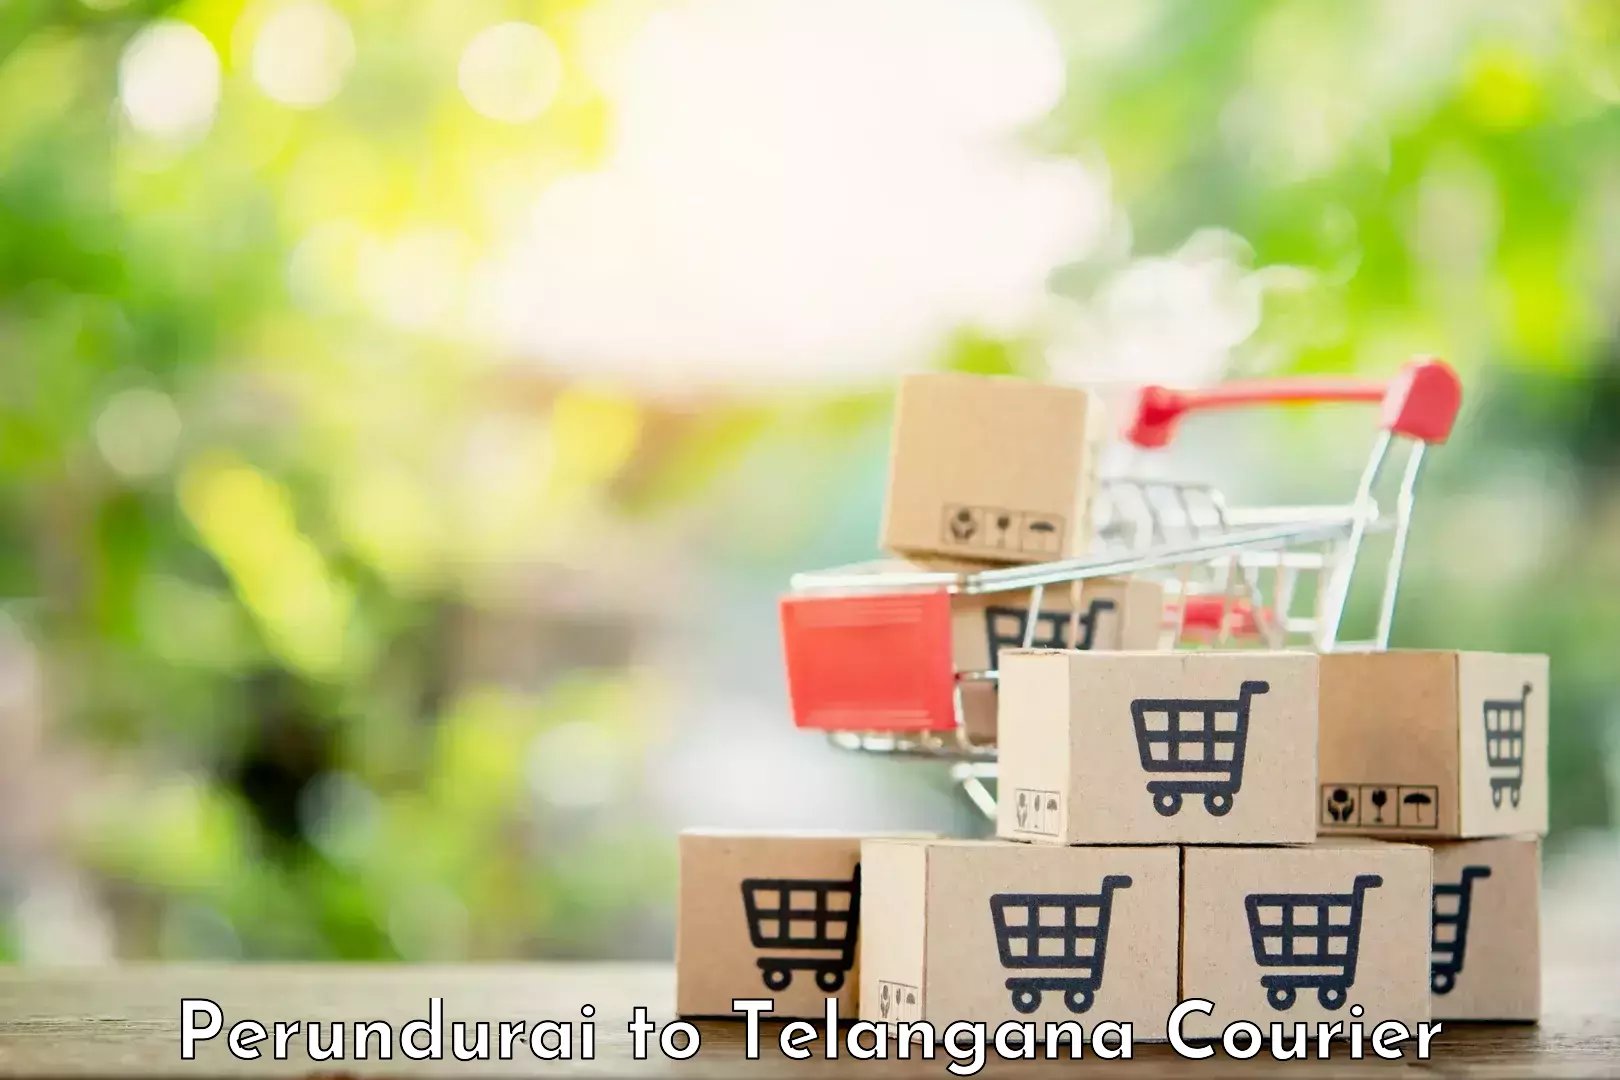 Customer-oriented courier services Perundurai to Utnoor